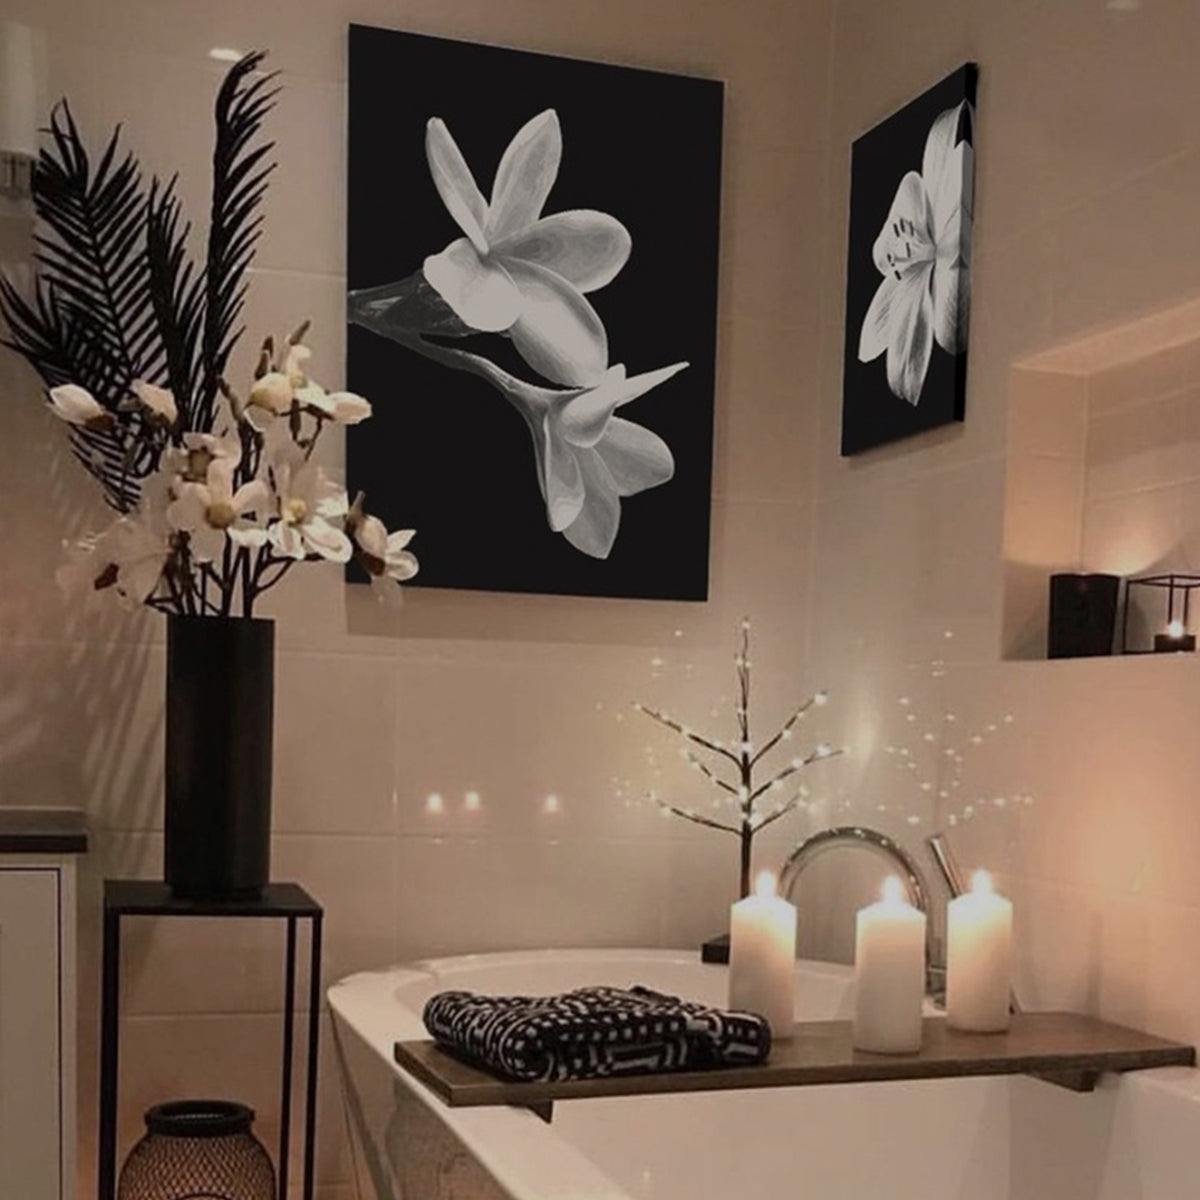 Baño Gris con Cuadro  Bathroom interior, Bathroom design, Bathroom  inspiration